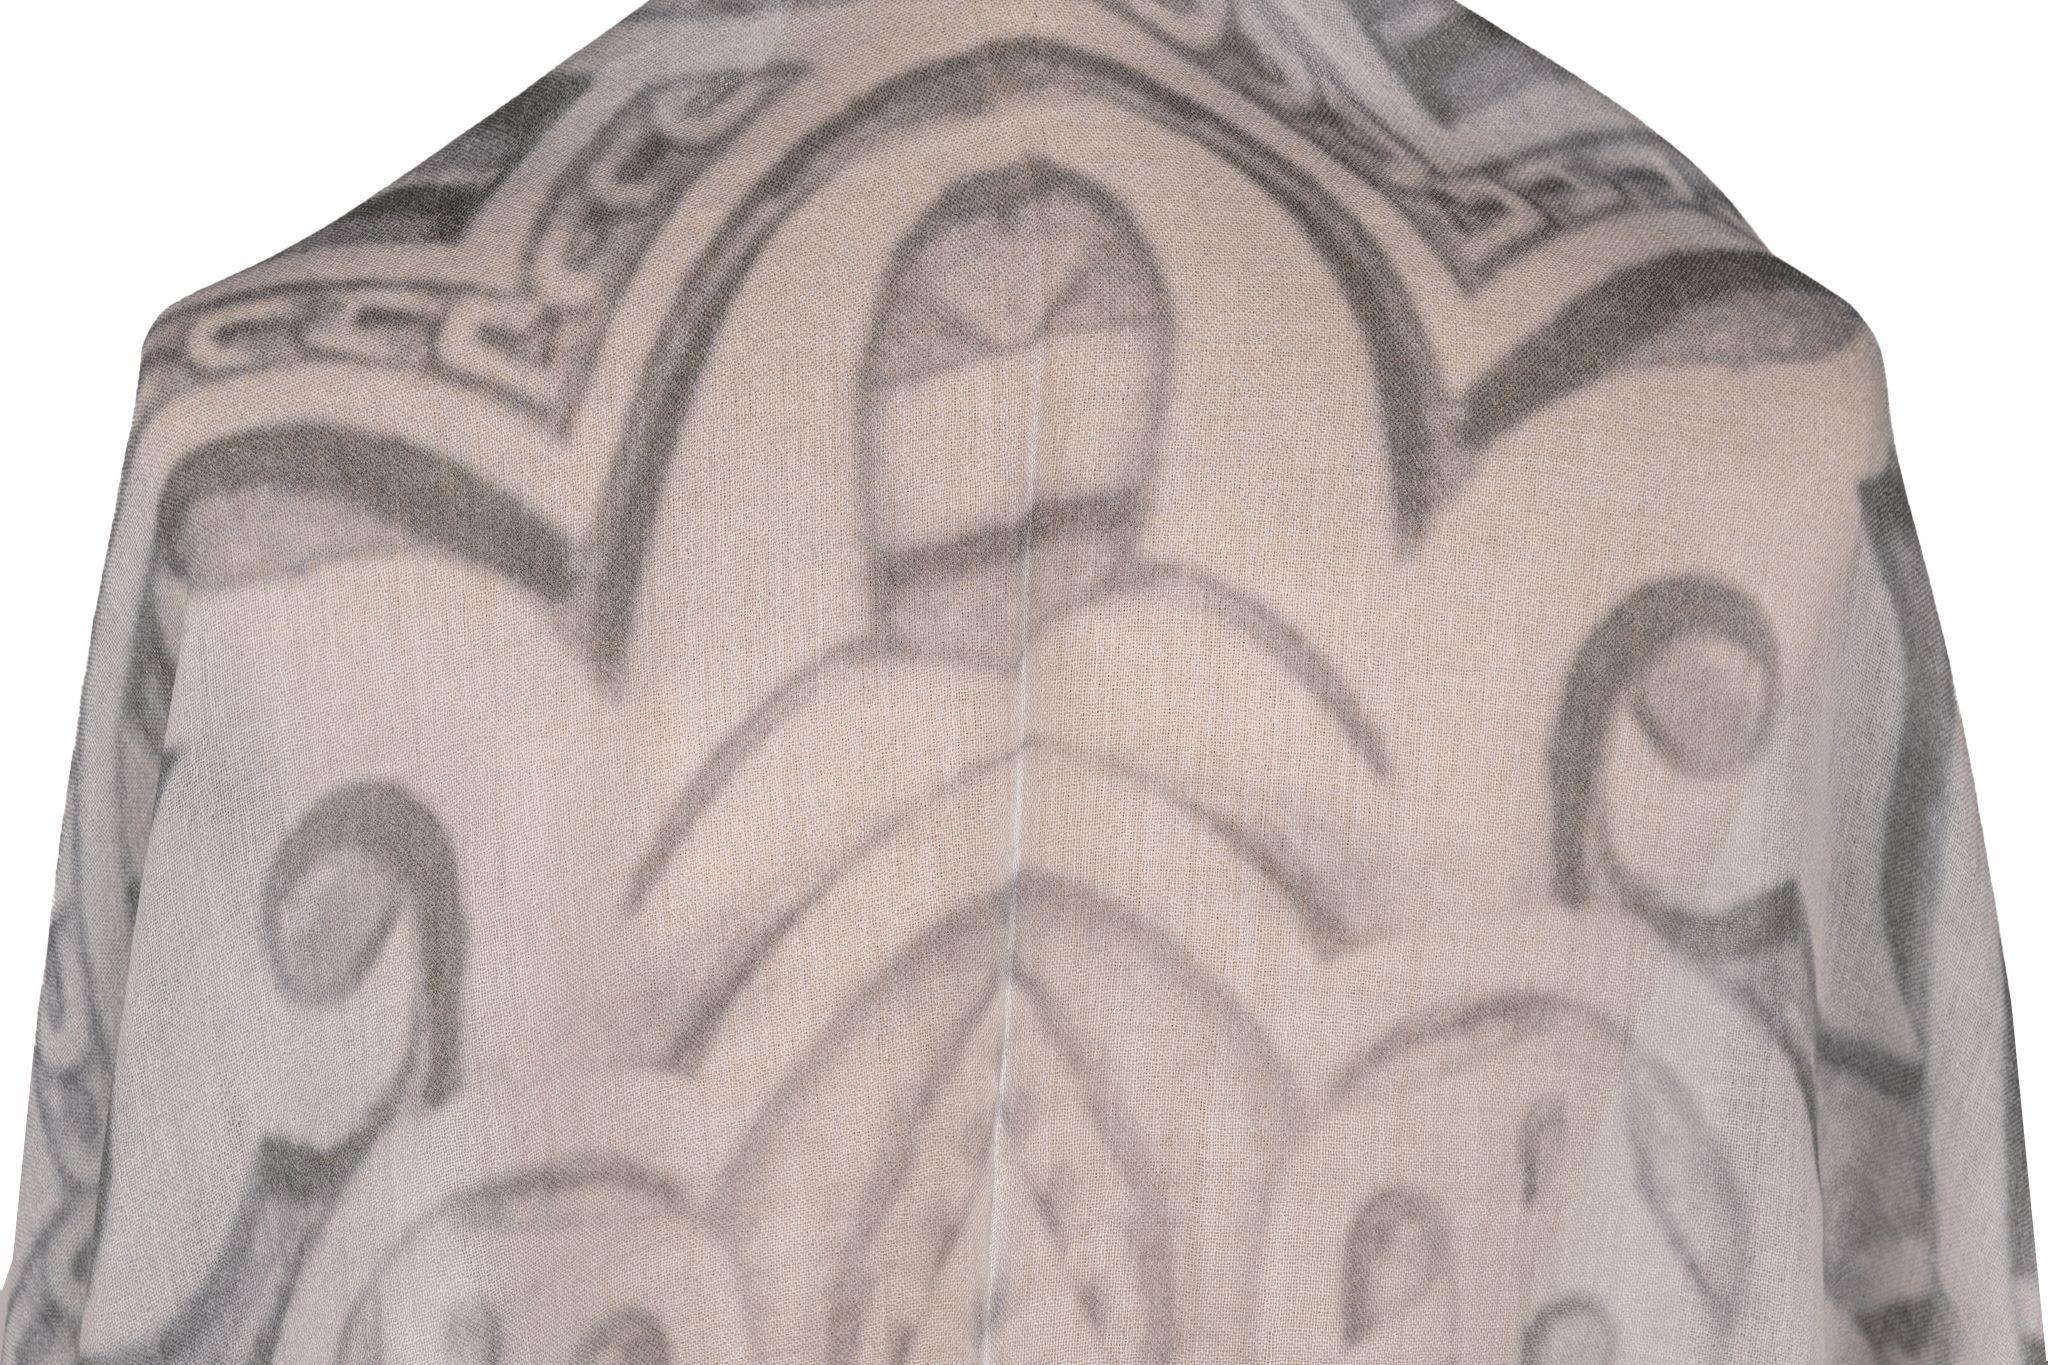 Chanel Kaschmirschal in Weiß und  grau. Das Muster zeigt alte architektonische Motive. Der Artikel ist in neuem Zustand.